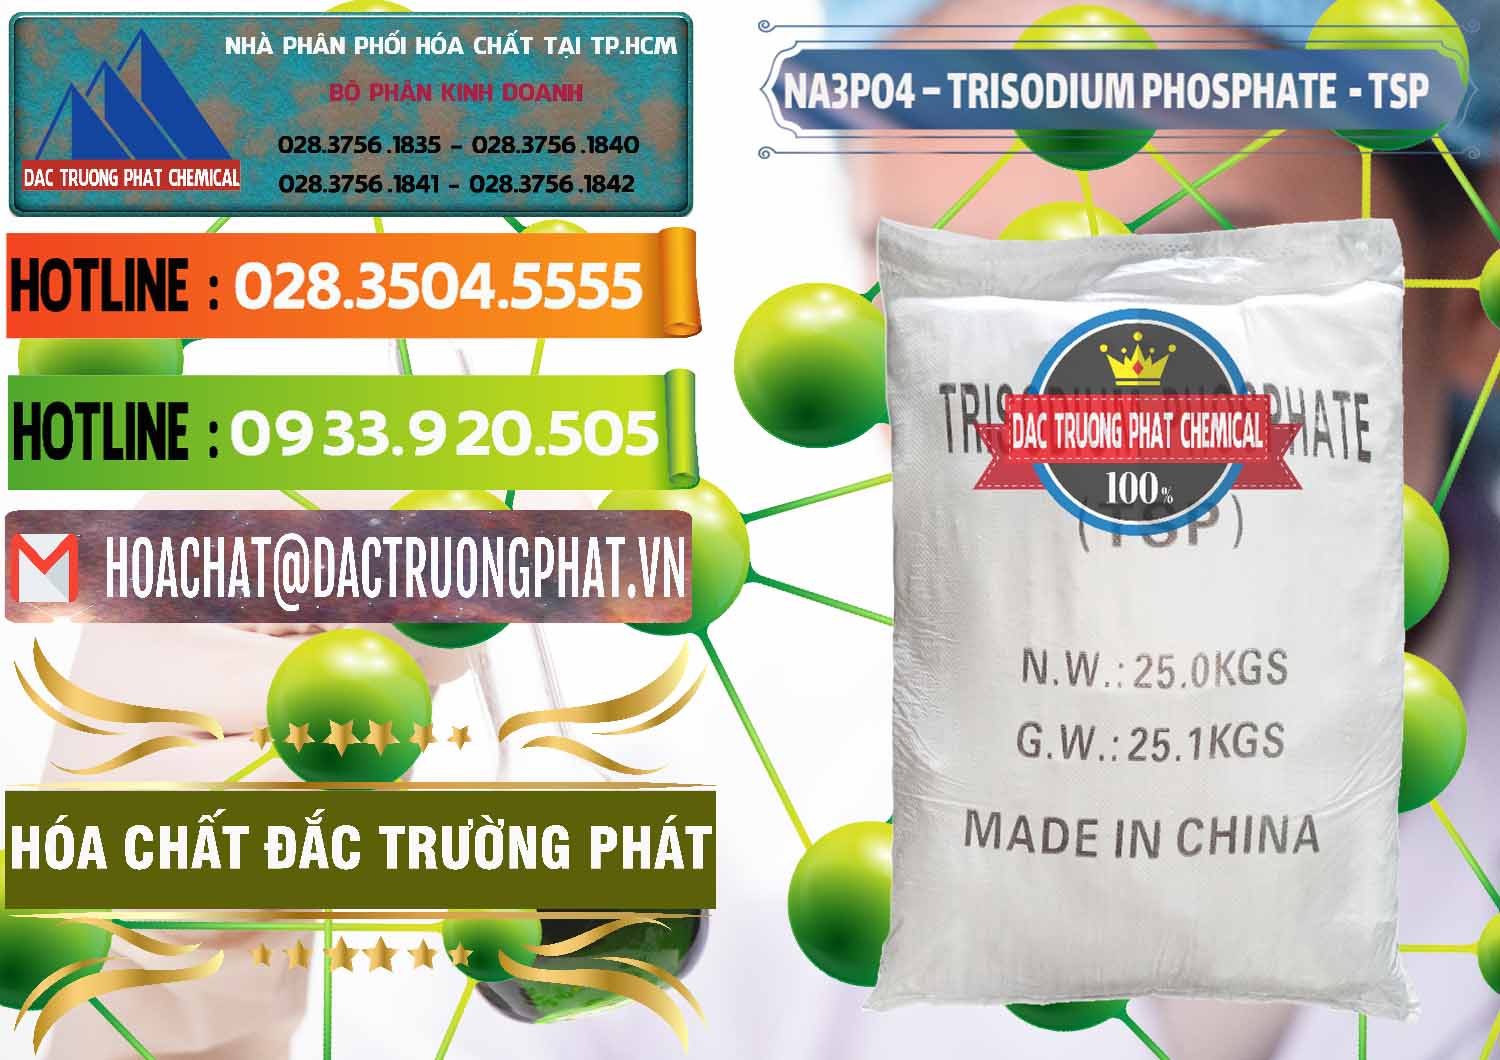 Đơn vị chuyên kinh doanh - bán Na3PO4 – Trisodium Phosphate Trung Quốc China TSP - 0103 - Cty chuyên phân phối _ kinh doanh hóa chất tại TP.HCM - cungcaphoachat.com.vn